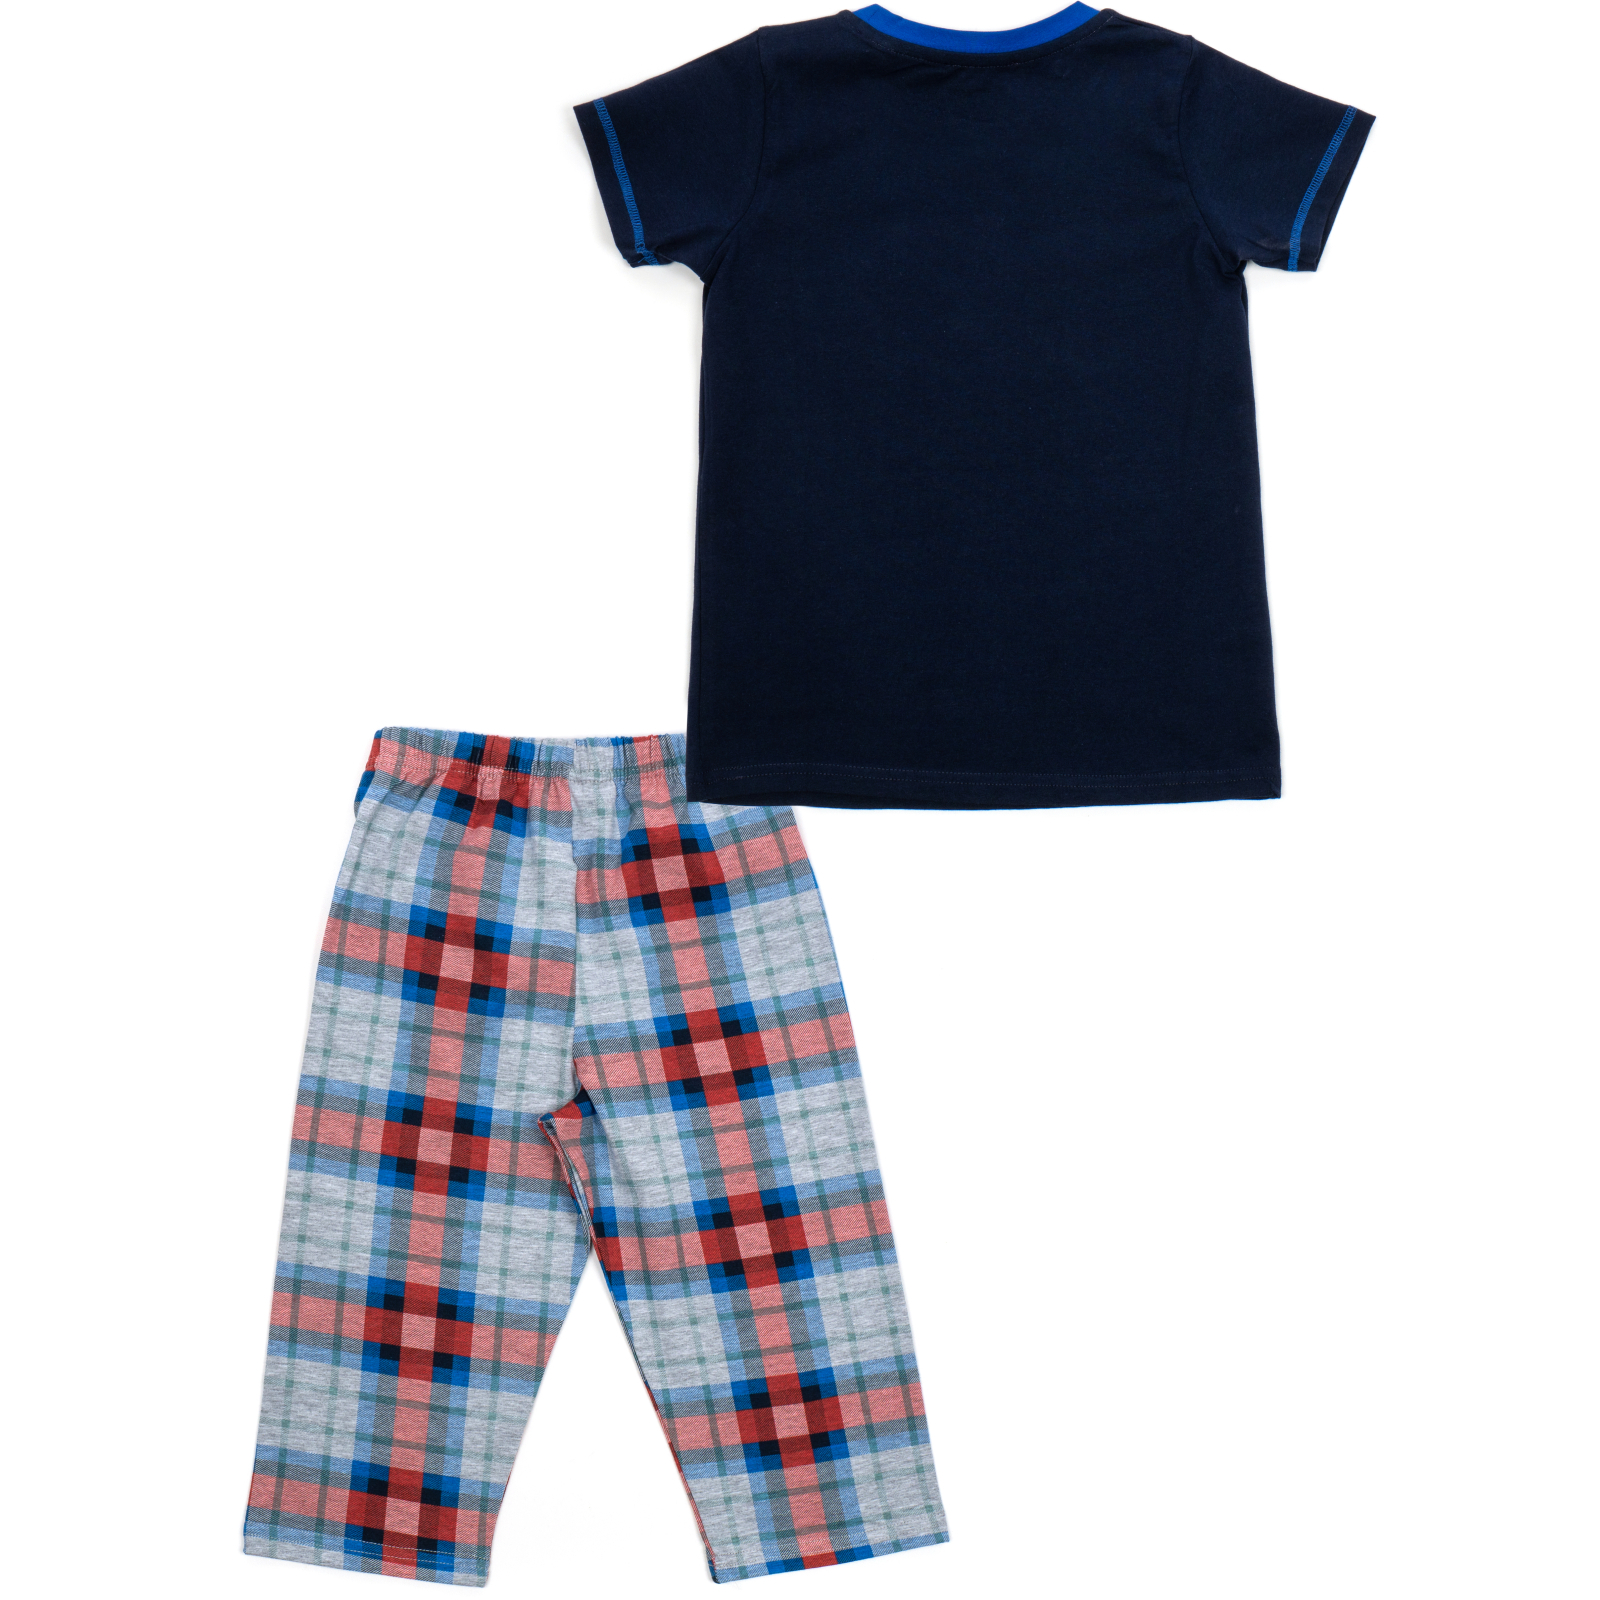 Пижама Matilda с футболкой (11701-2-98B-blue) изображение 4